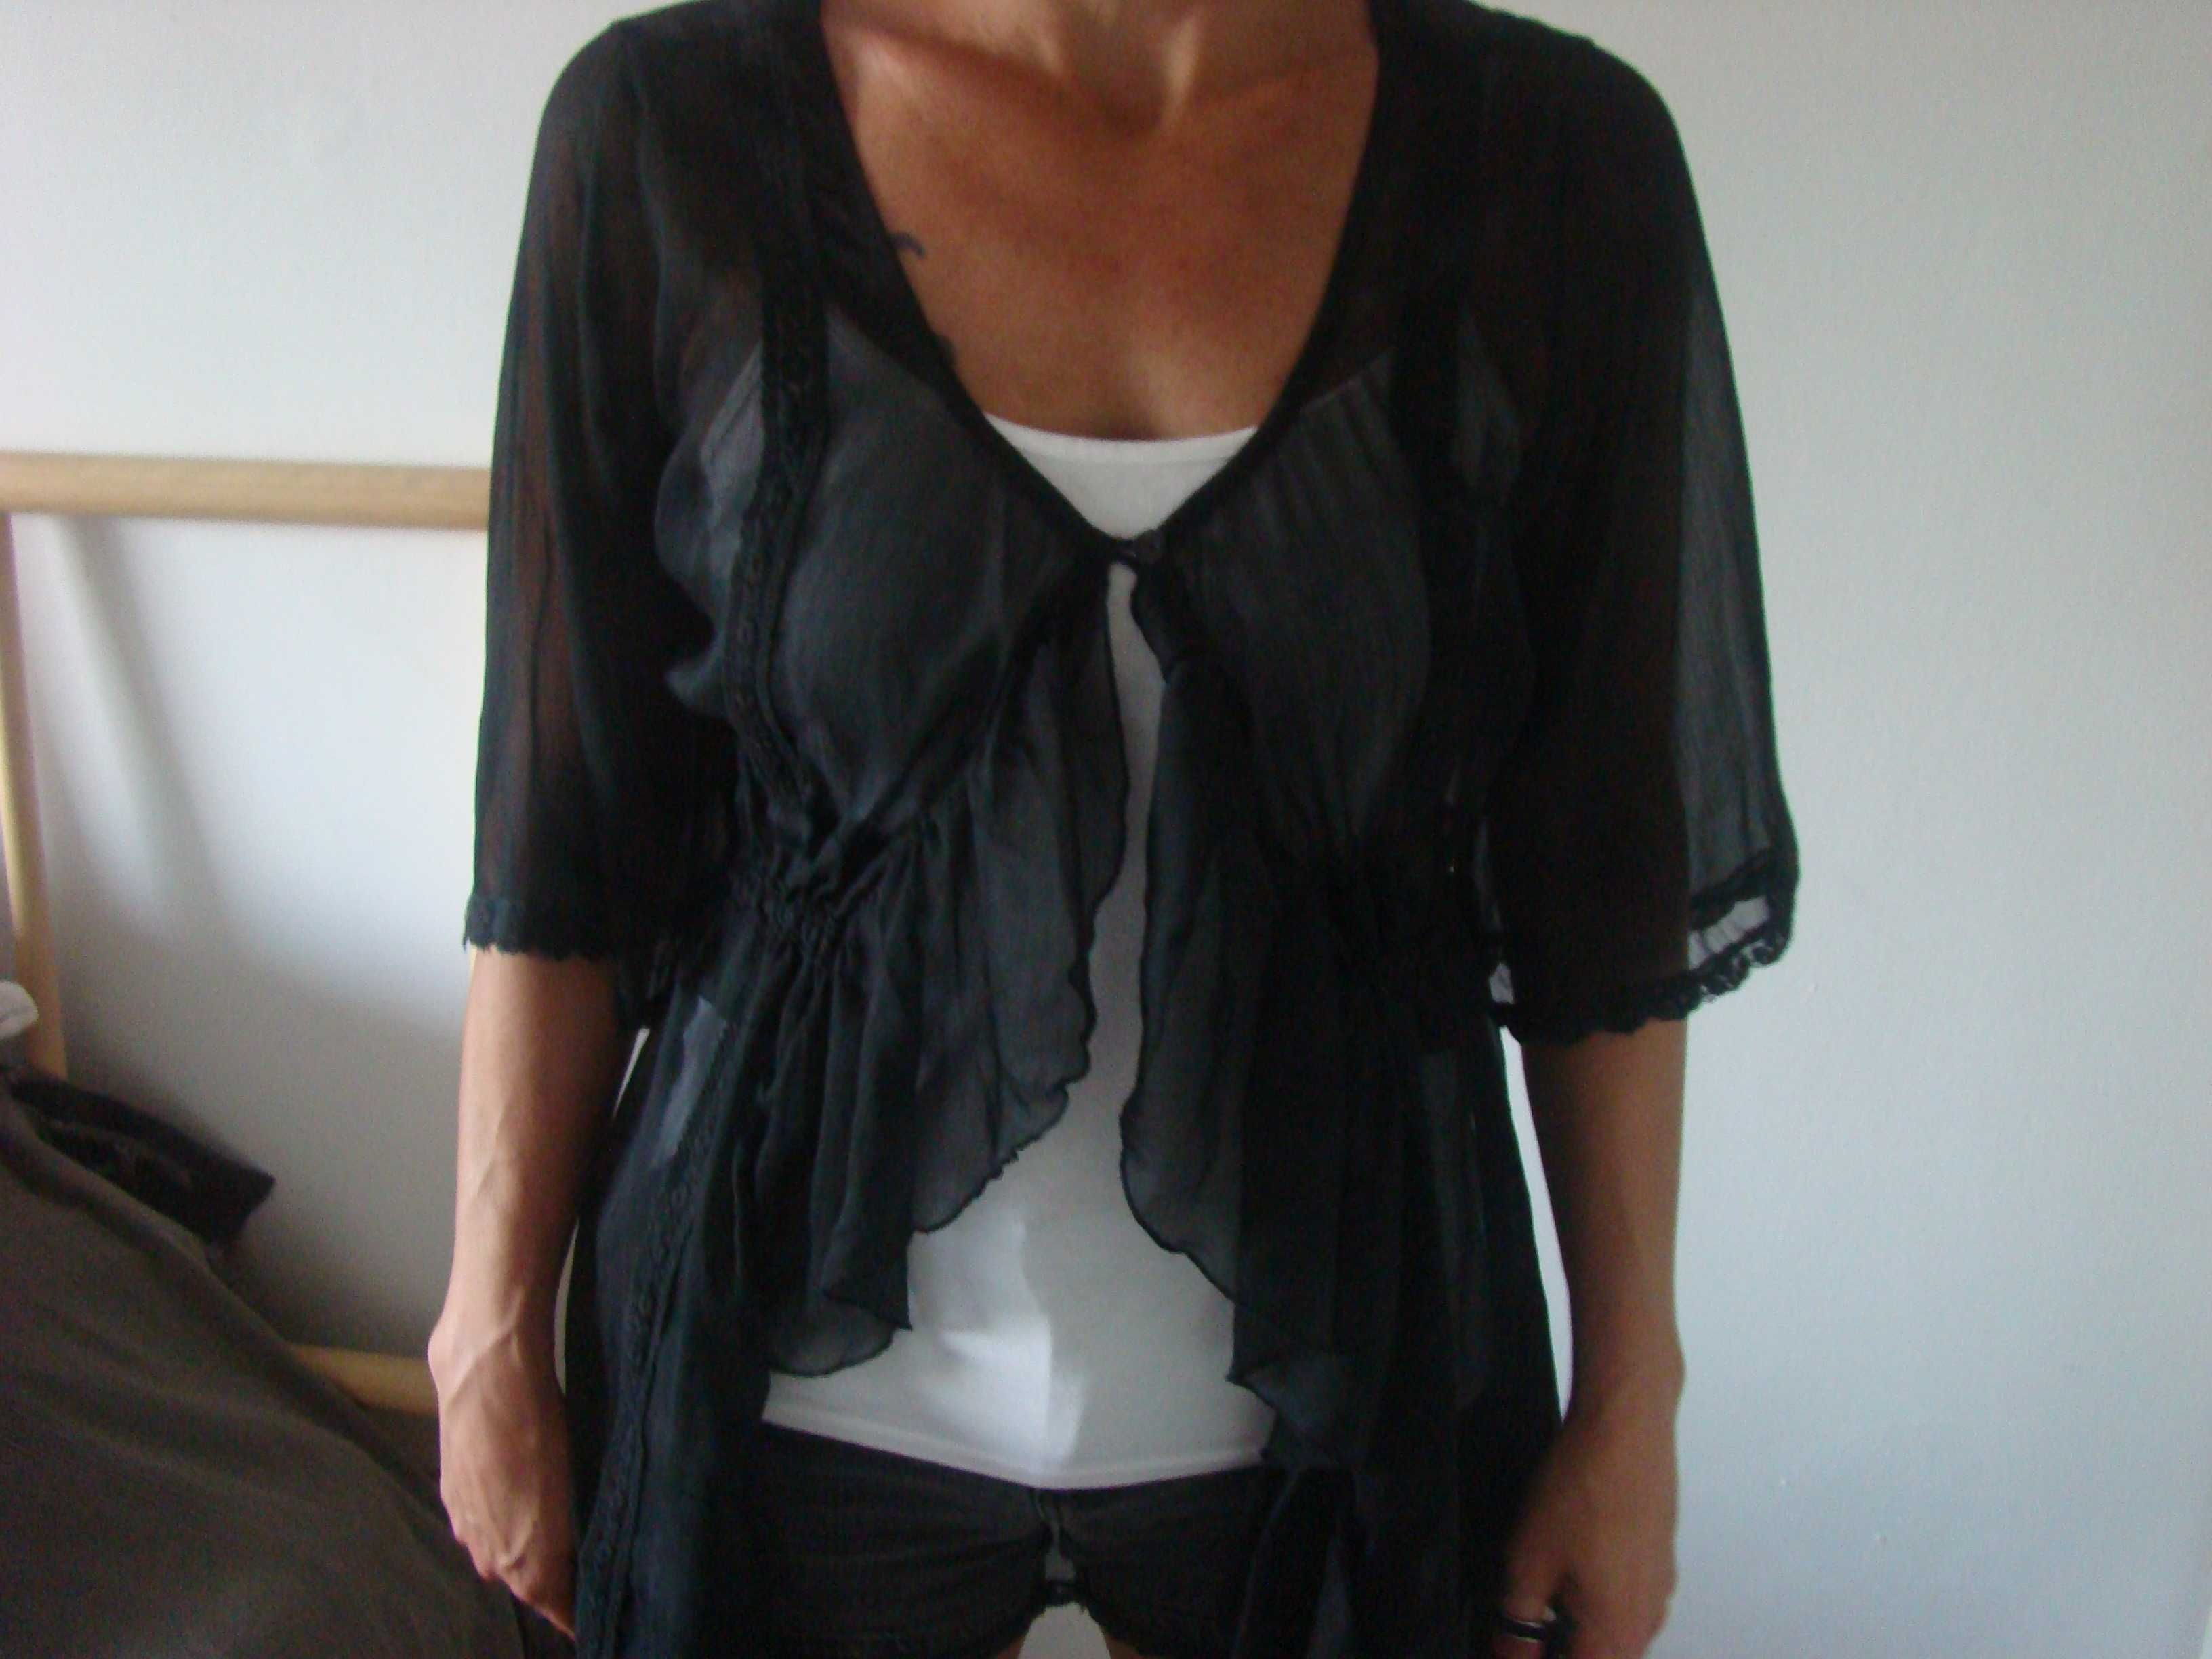 Camisa preta transparente e fluida com bordados